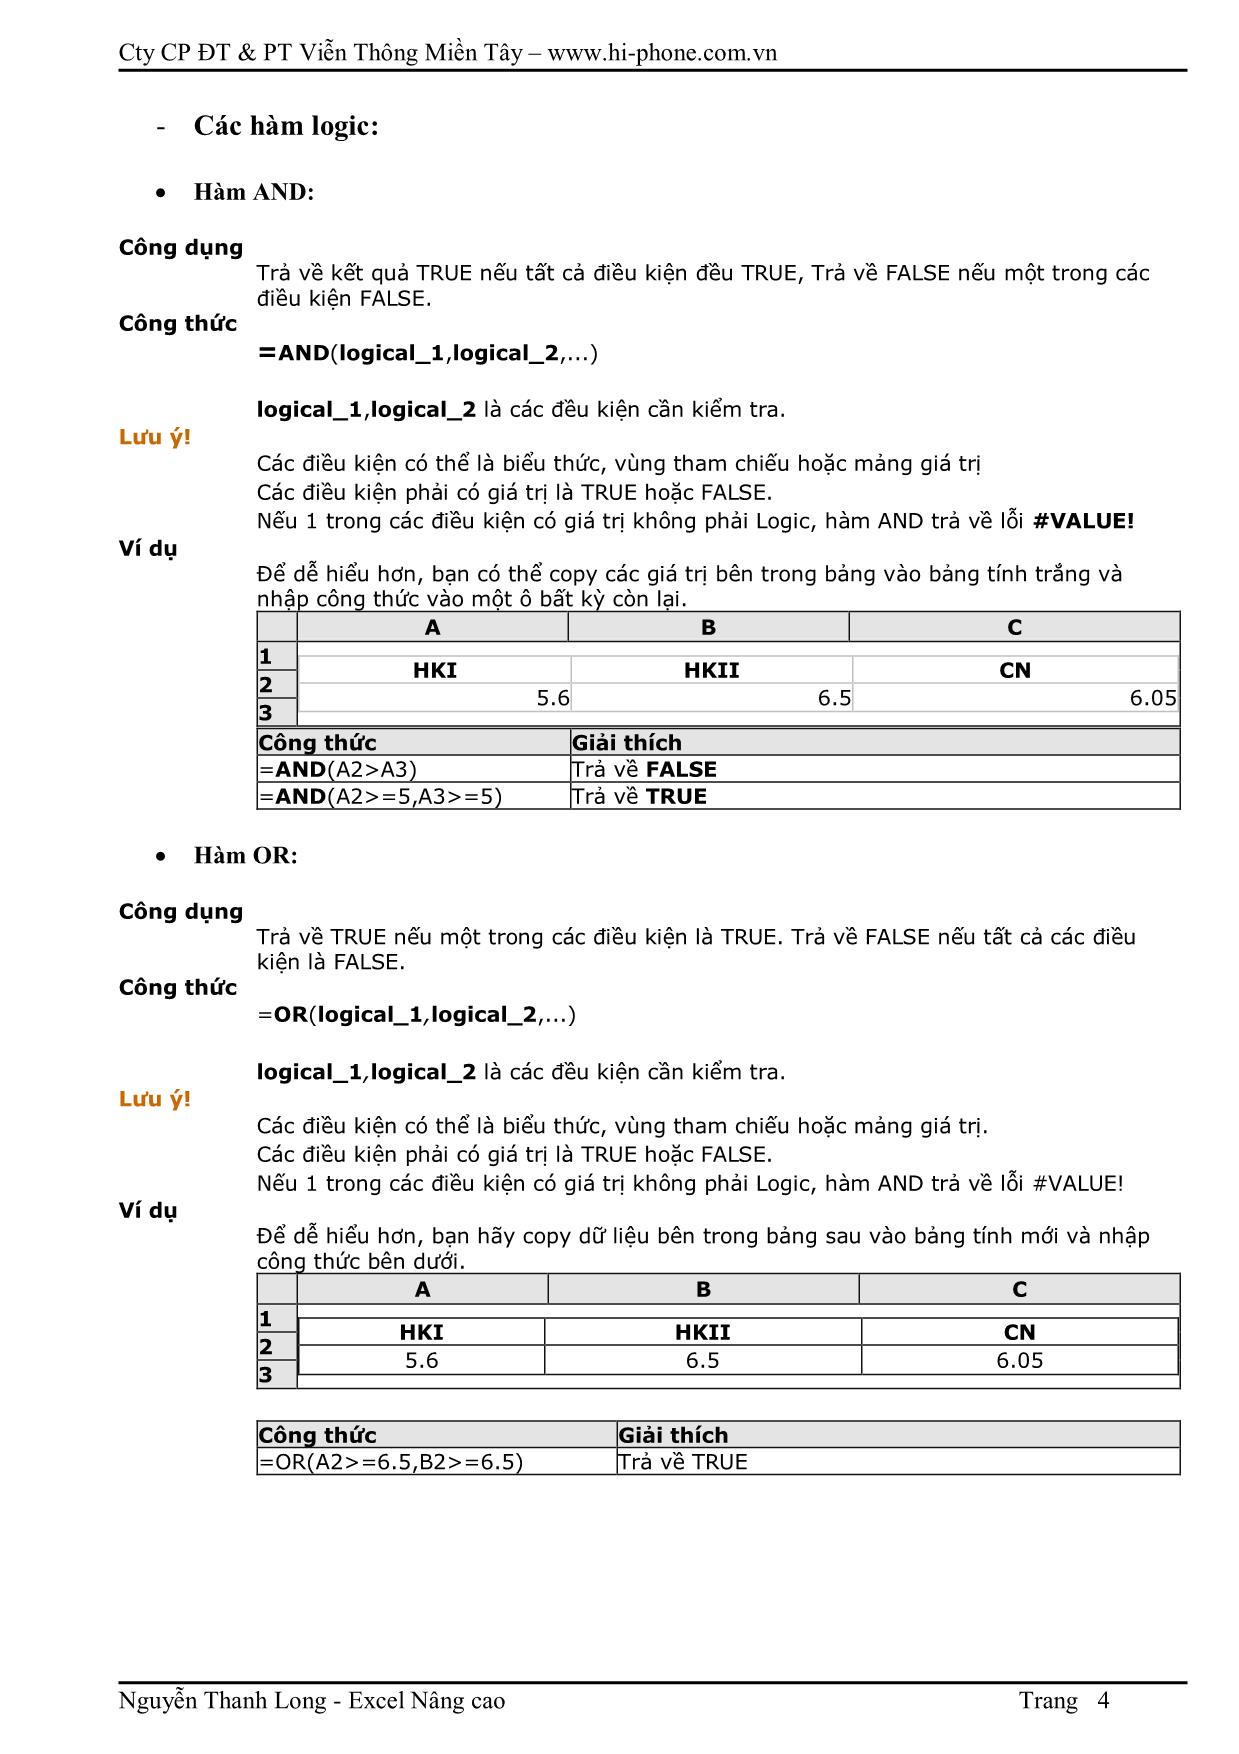 Tài liệu bài giảng Excel nâng cao trang 4